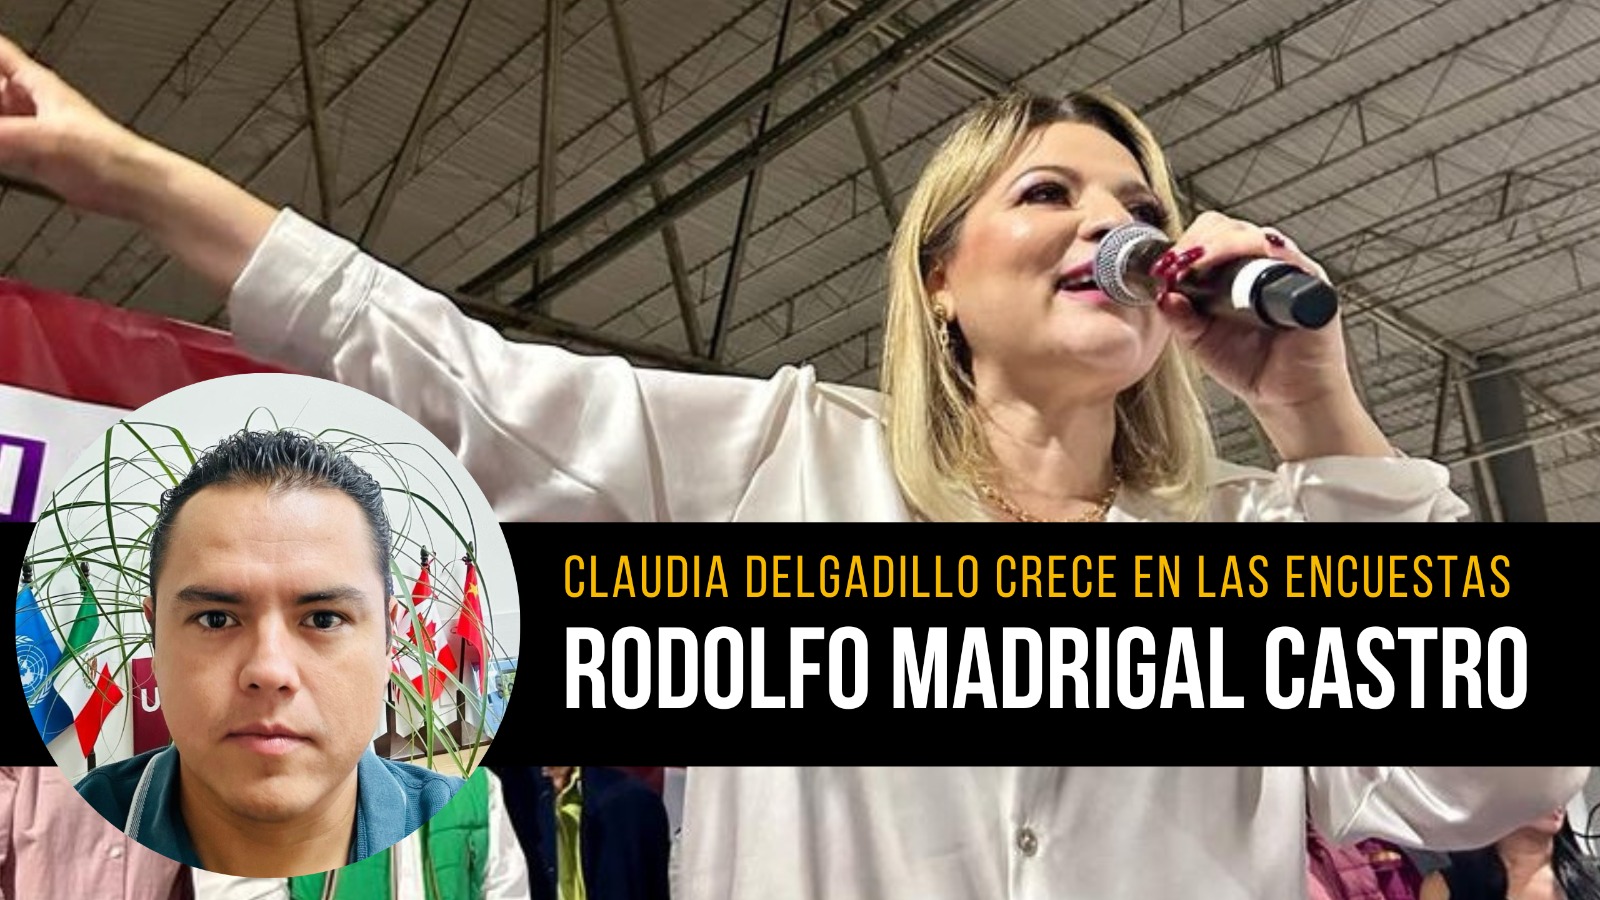 Claudia Delgadillo crece en las encuestas